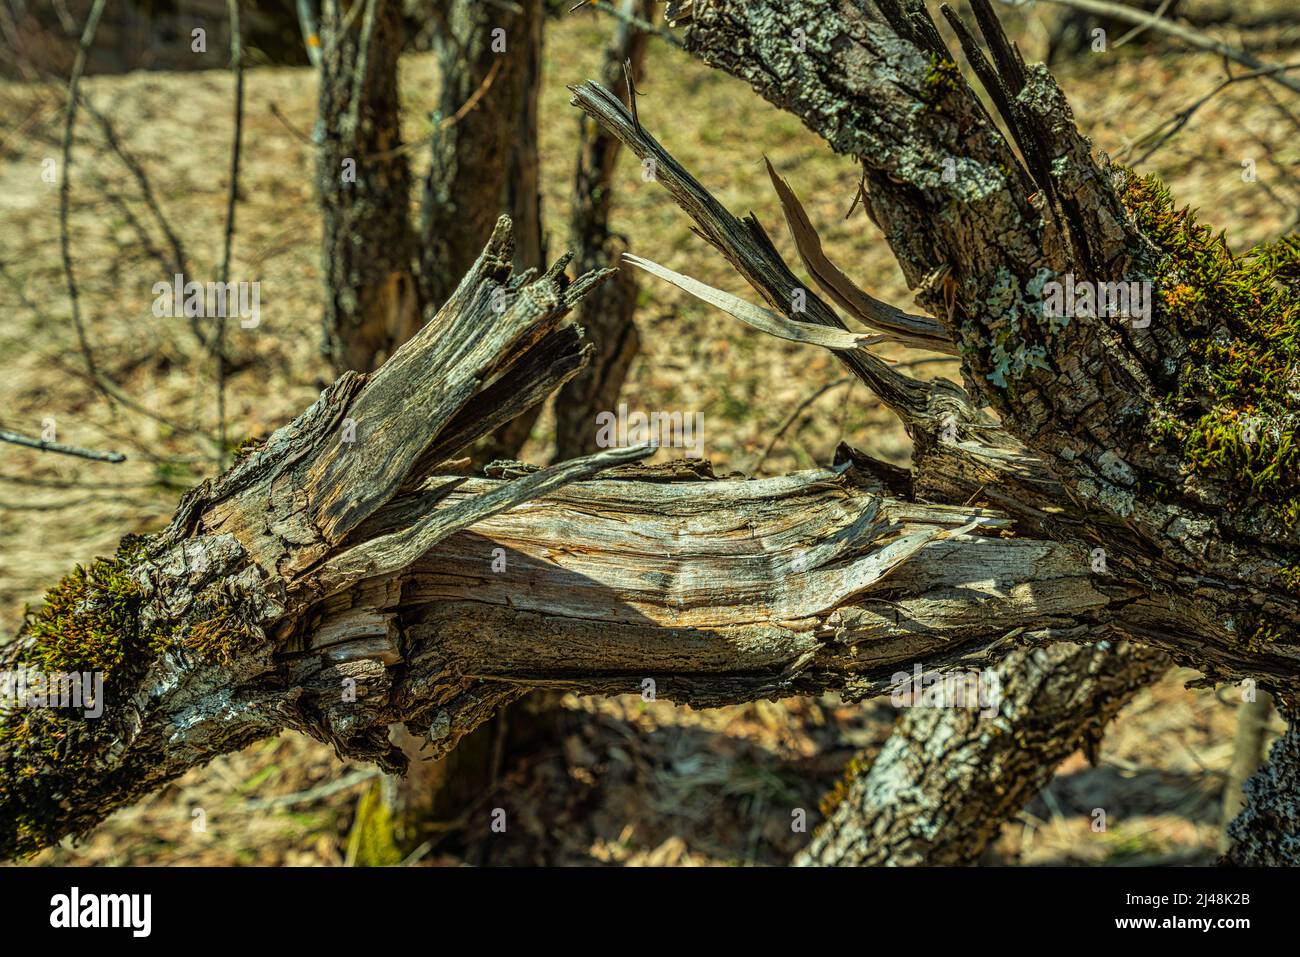 Branche sèche, fissurée et cassée avec mousse et lichen sur le dessus. Abruzzes, Italie, Europe Banque D'Images